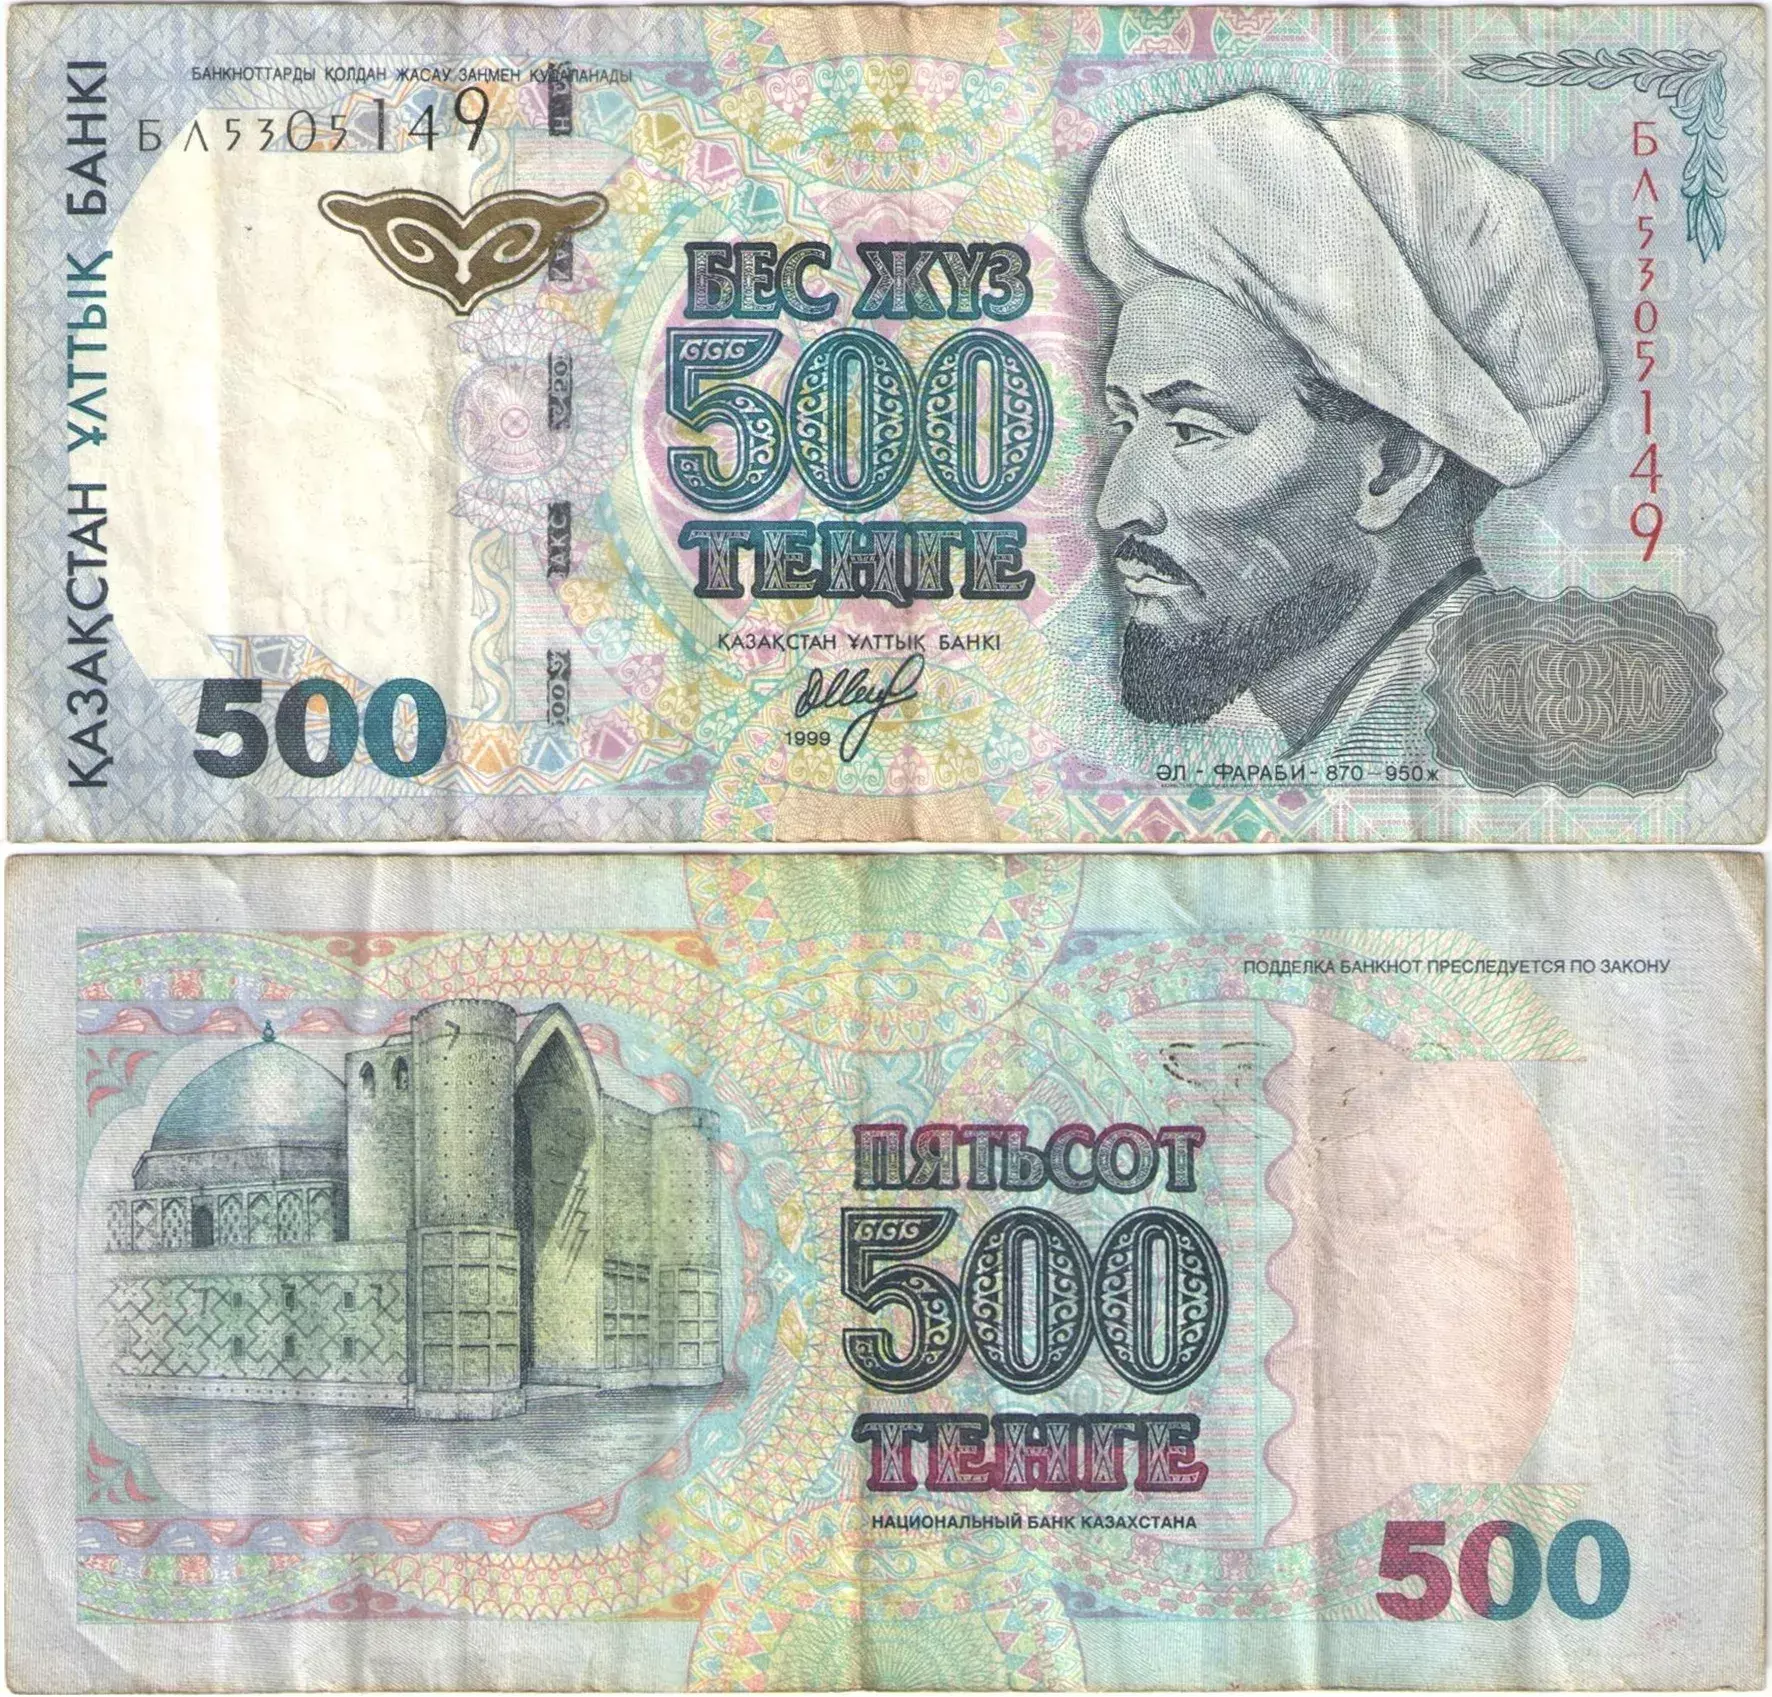 Казахстан 1999 года. Купюры 1999 года. Банкноты Казахстана. Купюры Казахстана с 1993 года. 500 Тенге в рублях.